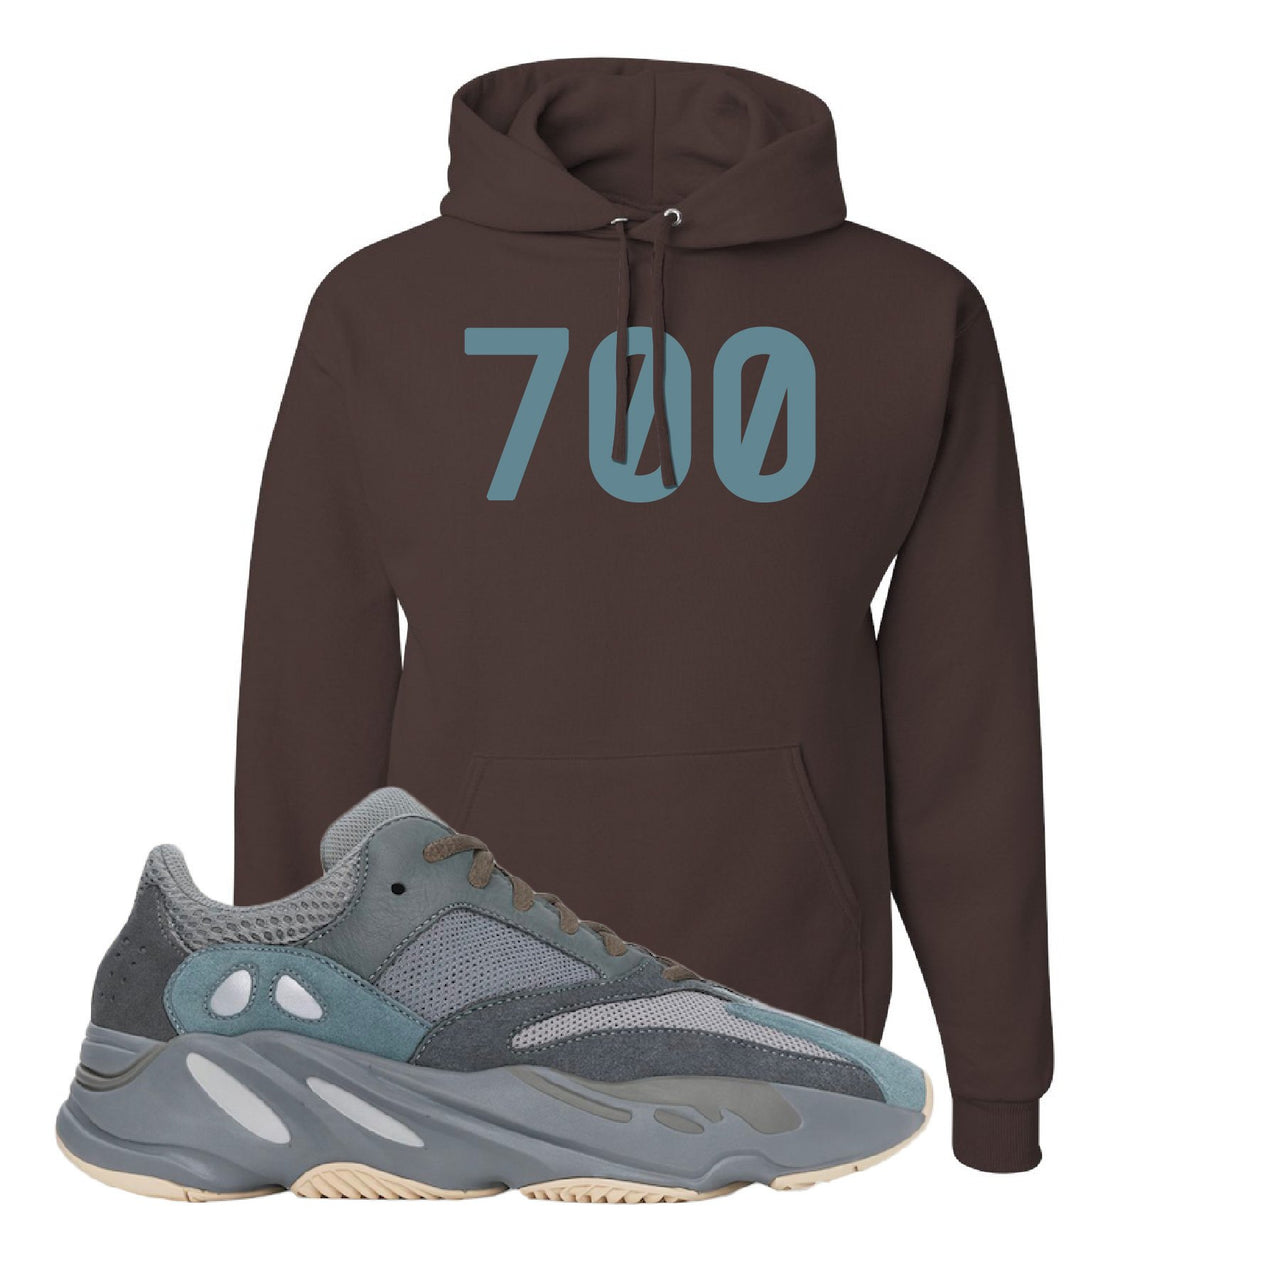 Yeezy Boost 700 Teal Blue 700 Chocolate Sneaker Hook Up Pullover Hoodie